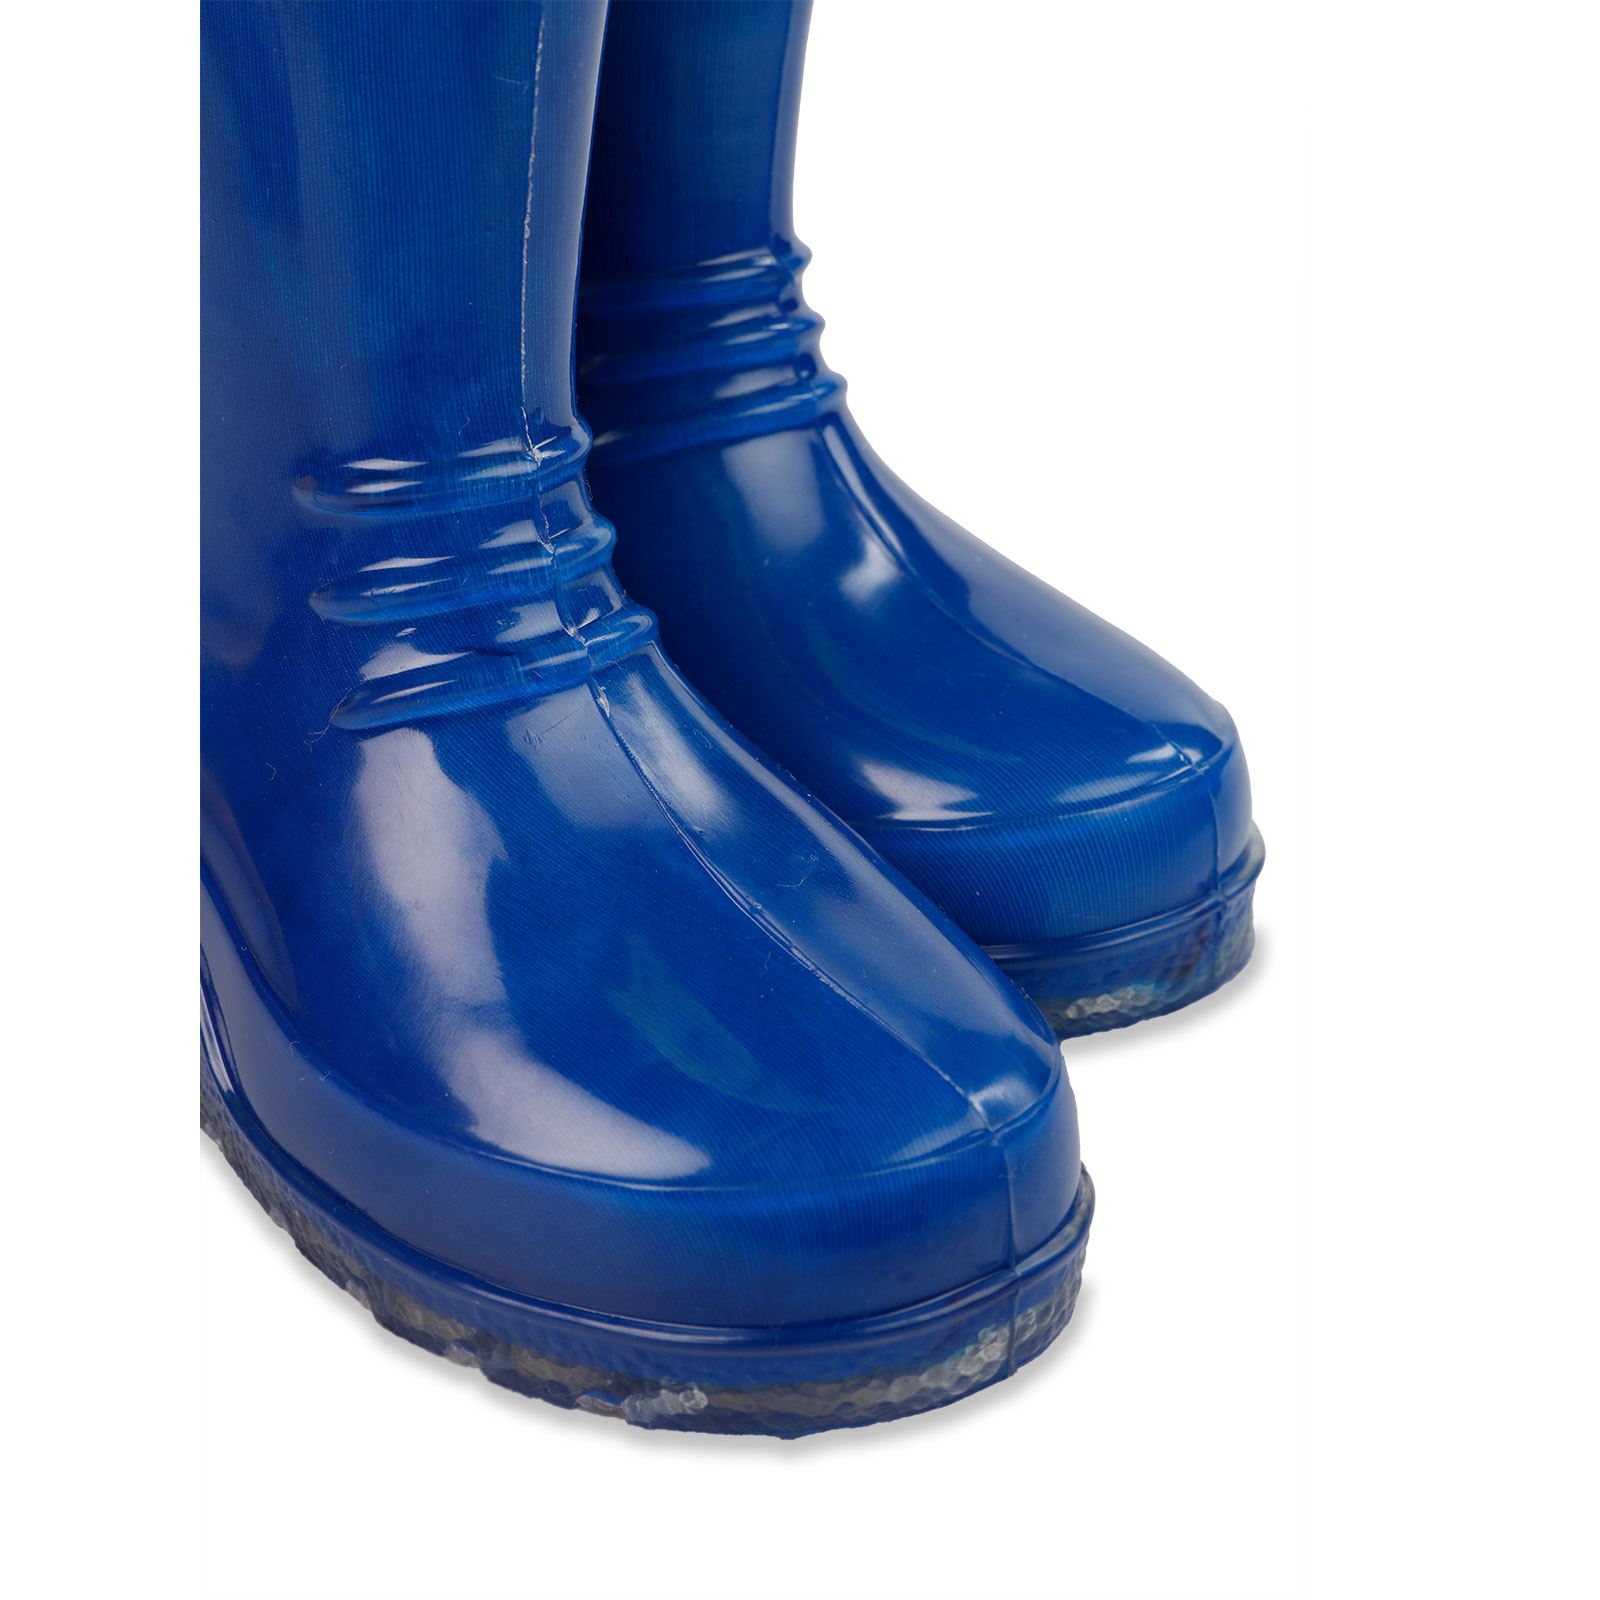 Civil Boots Erkek Çocuk Çizme 30-36 Numara Saks Mavisi